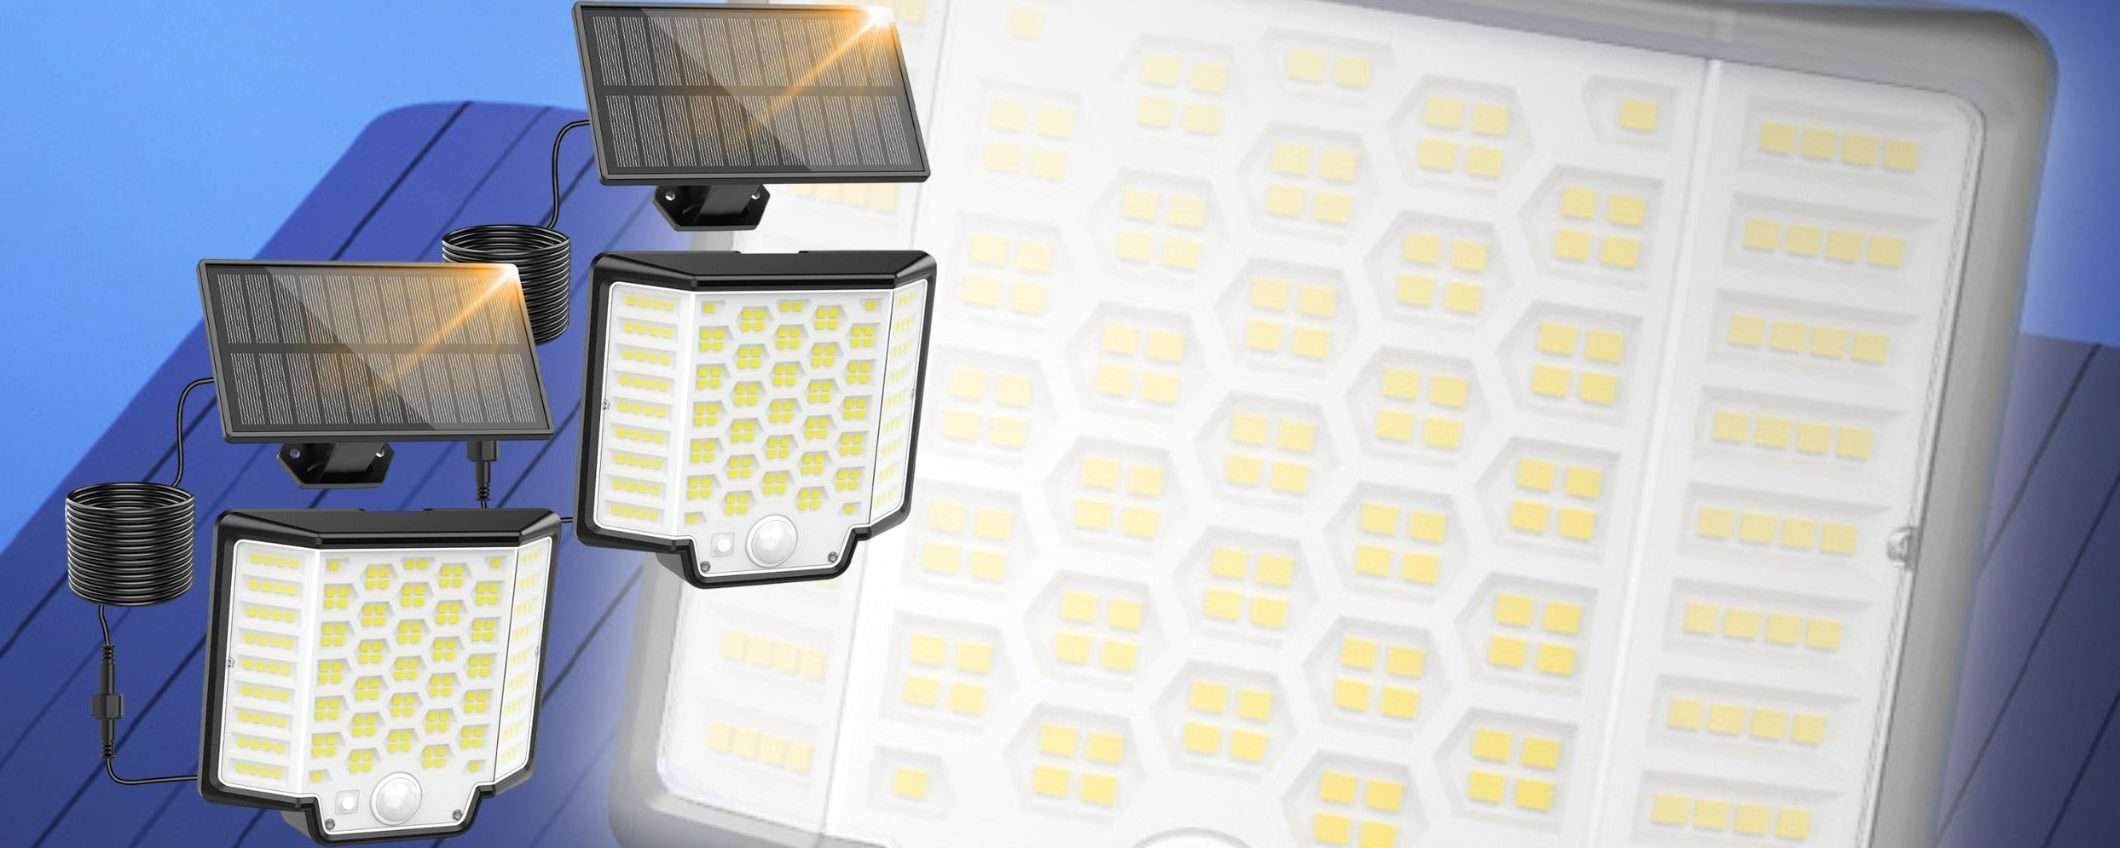 Luce solare 186 LED a 10,50€ su Amazon: illuminazione STRAORDINARIA